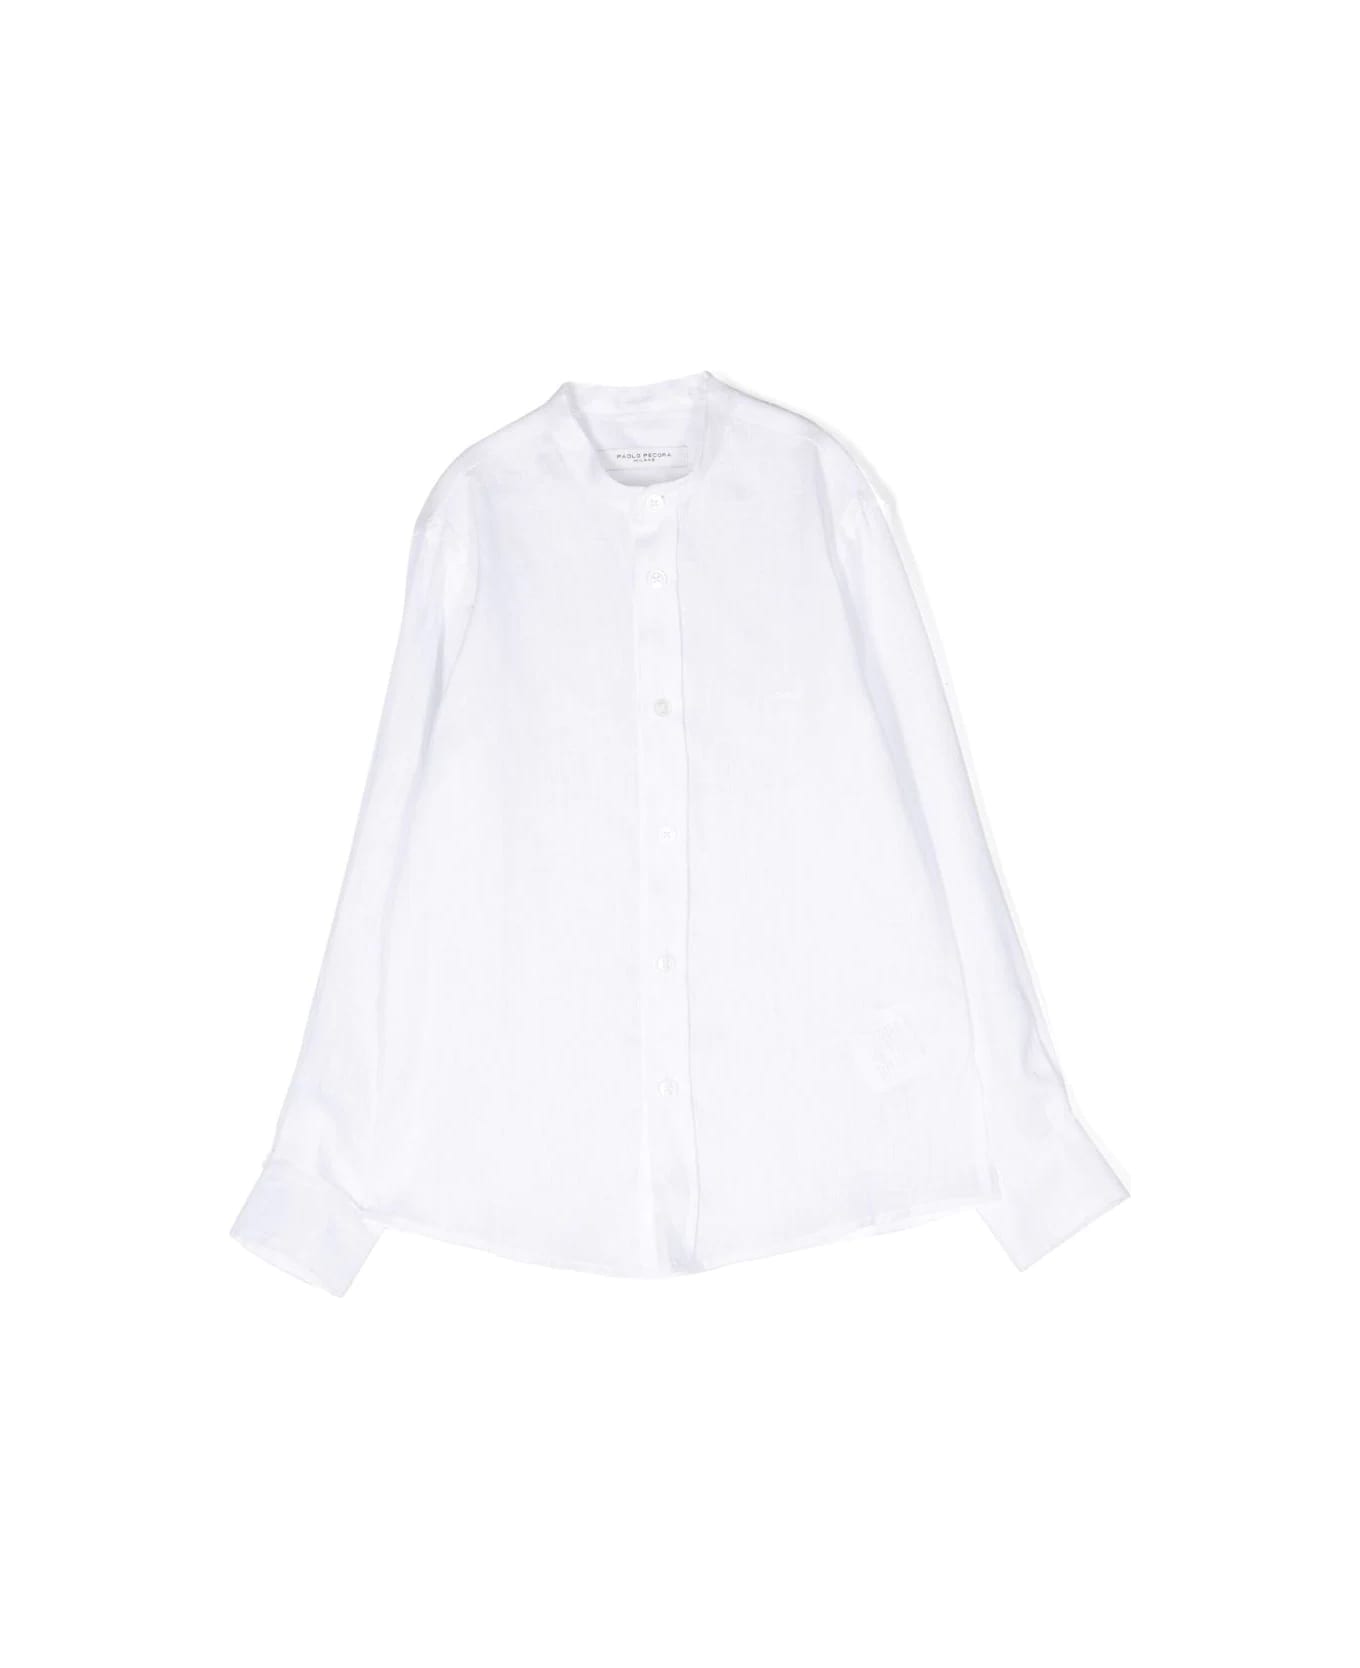 Paolo Pecora Korean Shirt - White